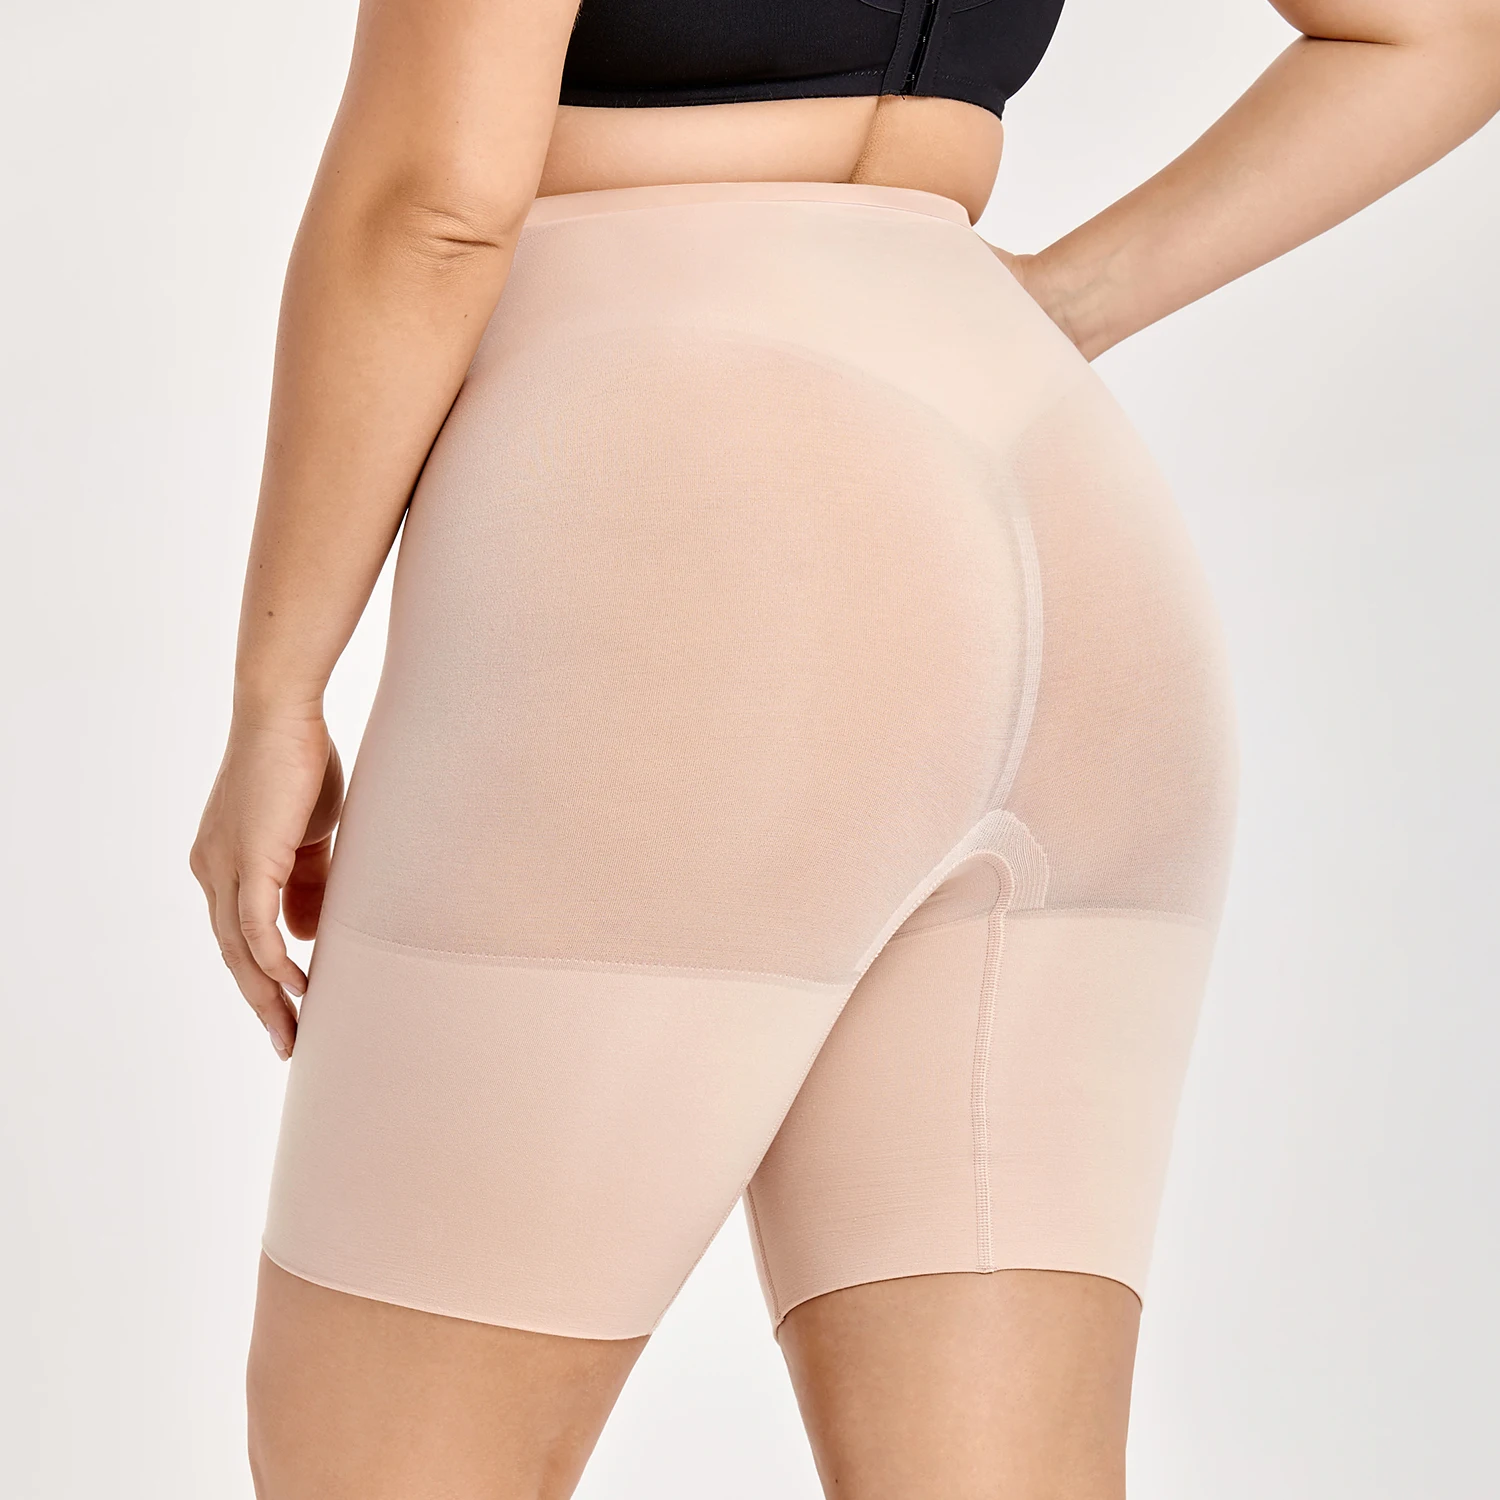 DELIMIRA Pantalones Moldeadores Braguitas Reductoras Adelgazantes Tallas Grandes para Mujer Beige 42 